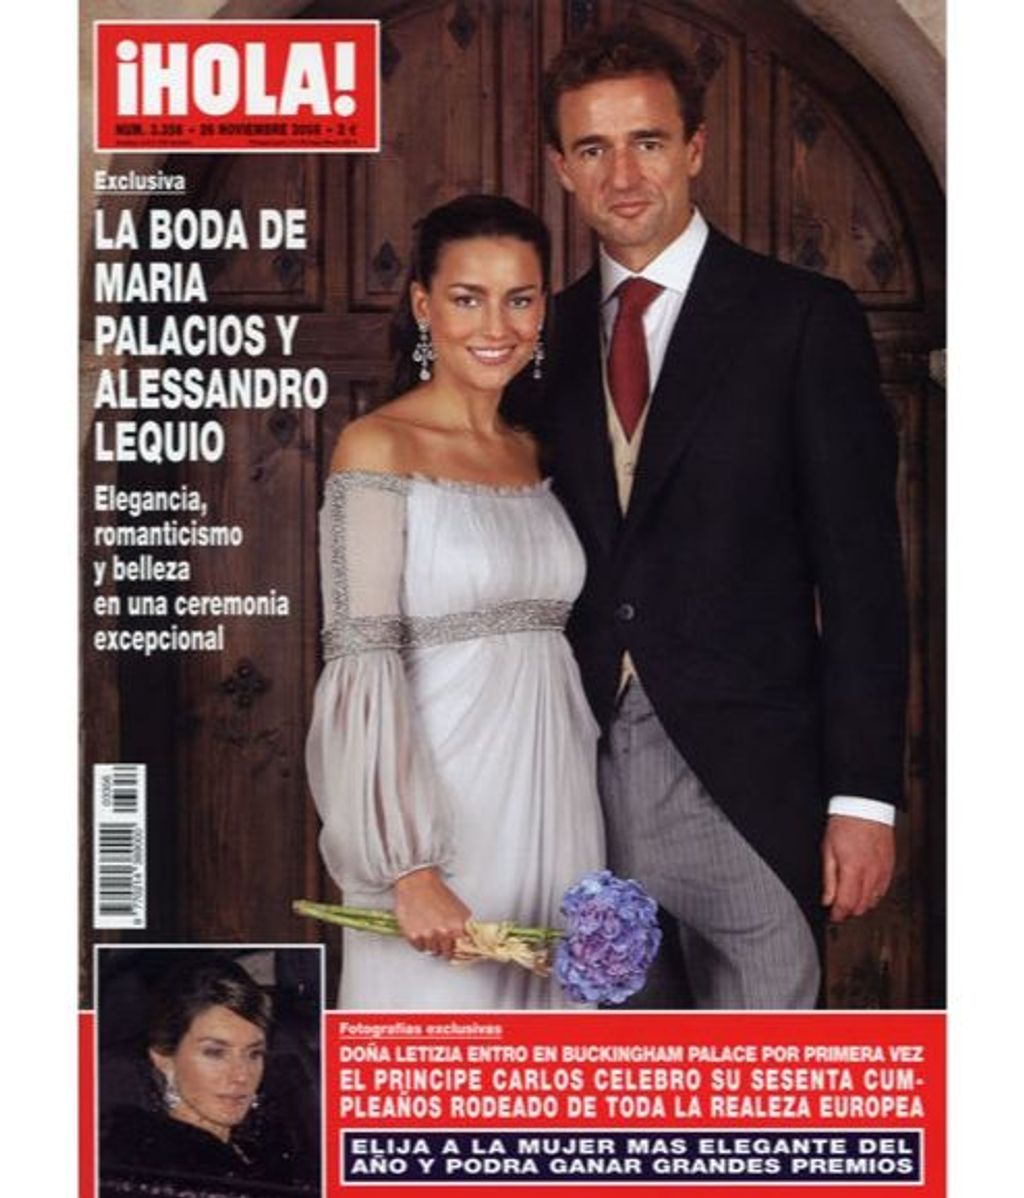 Portada de ¡HOLA! de la boda de Alessandro Lequio y María Palacios